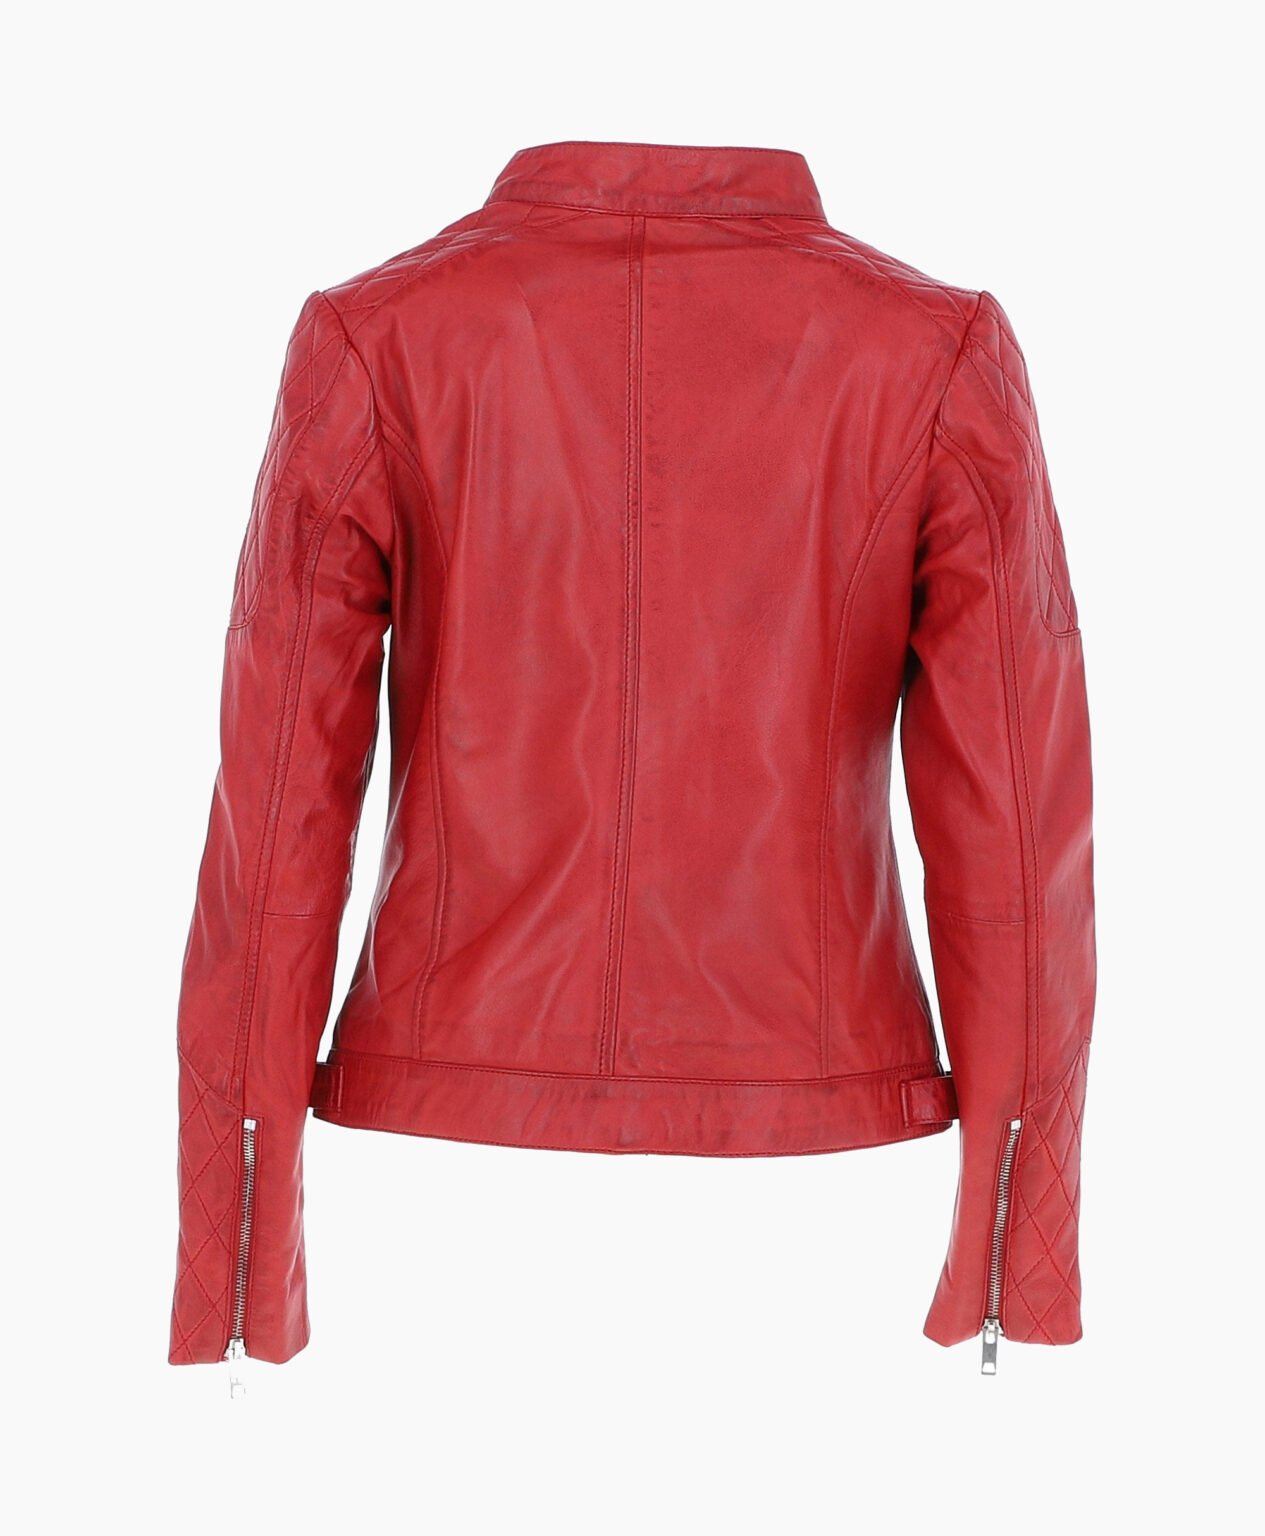 vogue-jacket-leather-jacket-red-malibu-image202